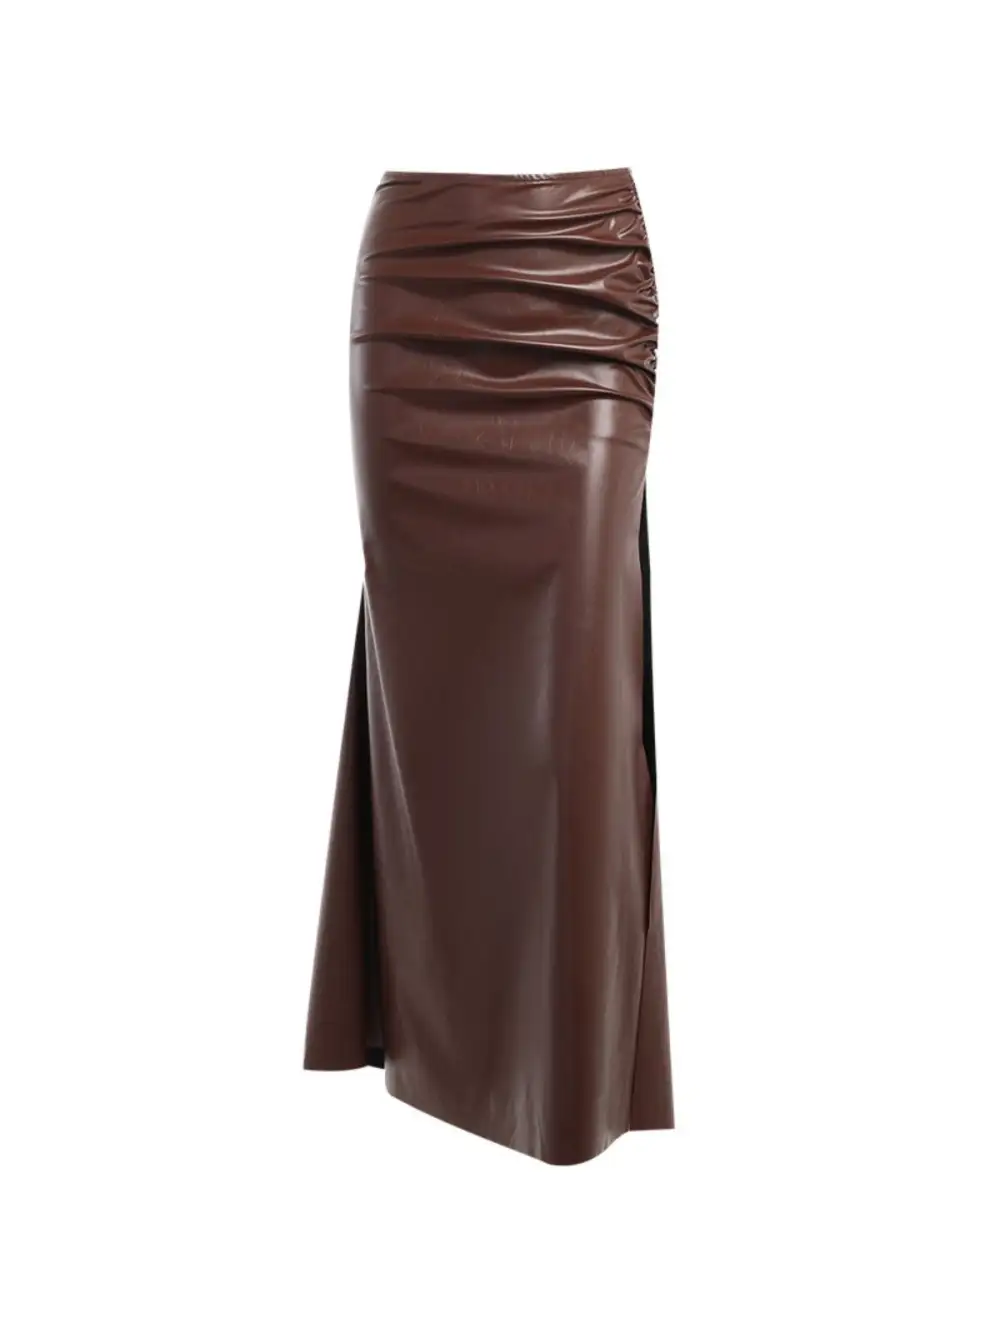 Fenna One Shoulder Leather Skirt Set